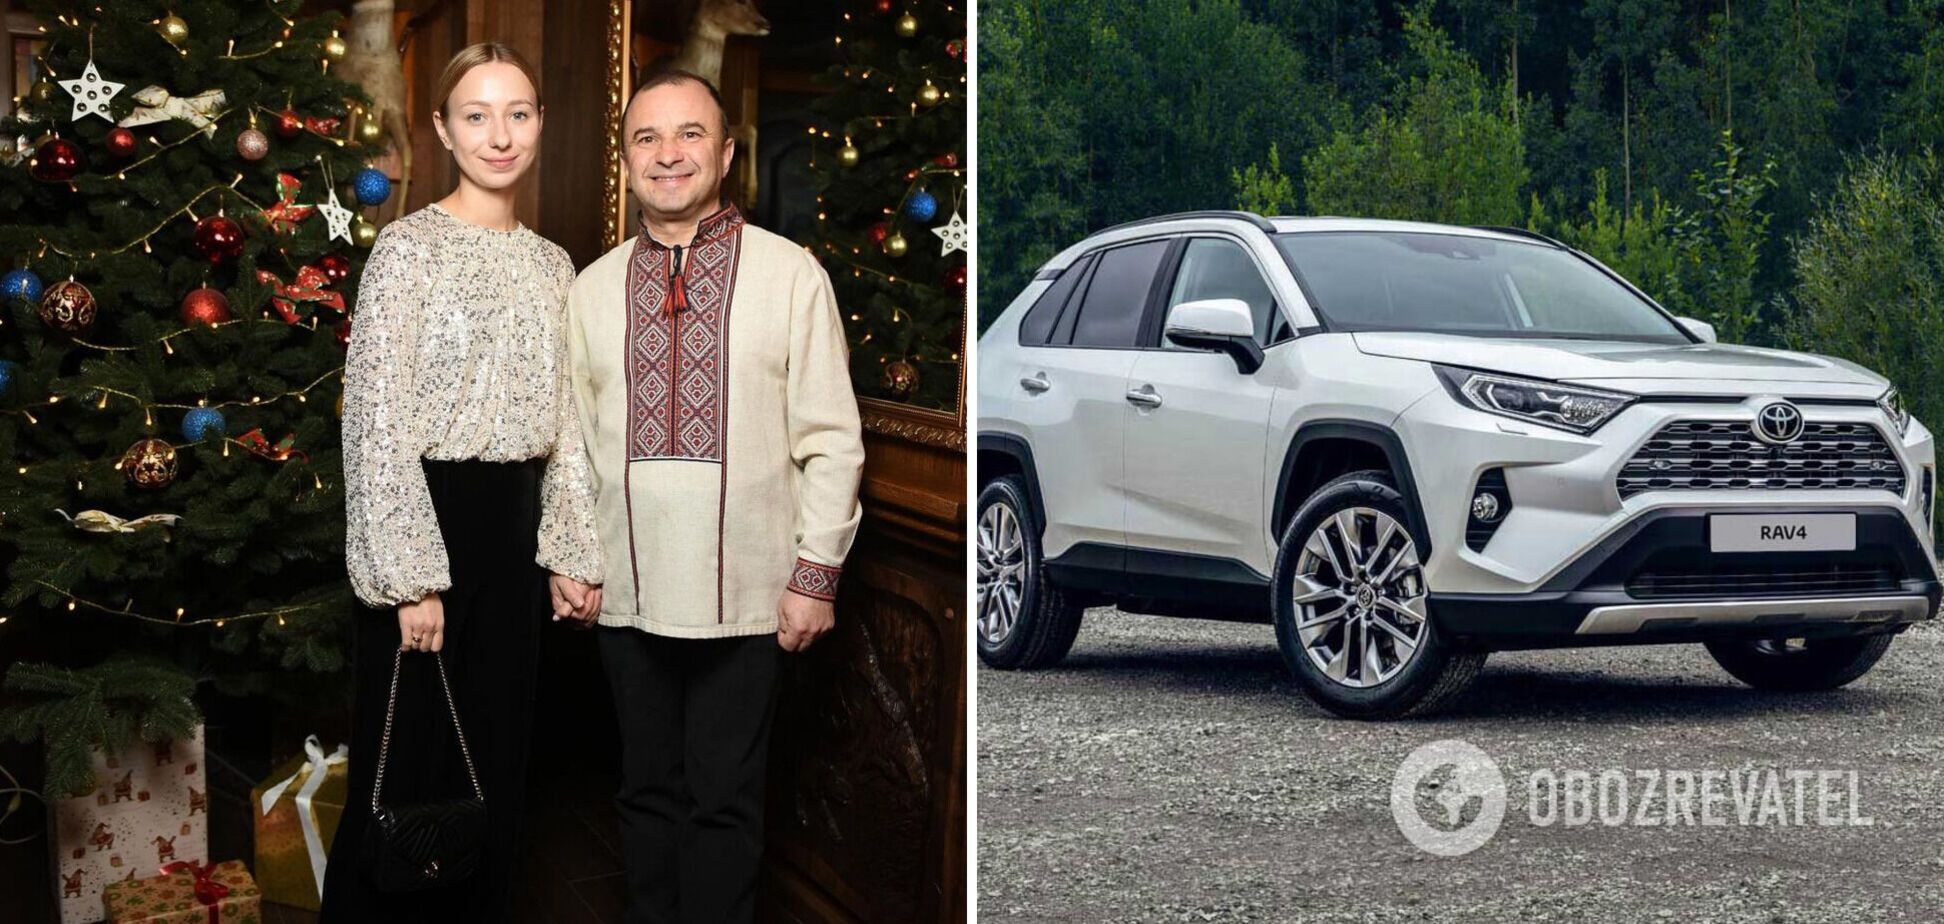 Віктор Павлік із дружиною купили авто за 700 тисяч гривень